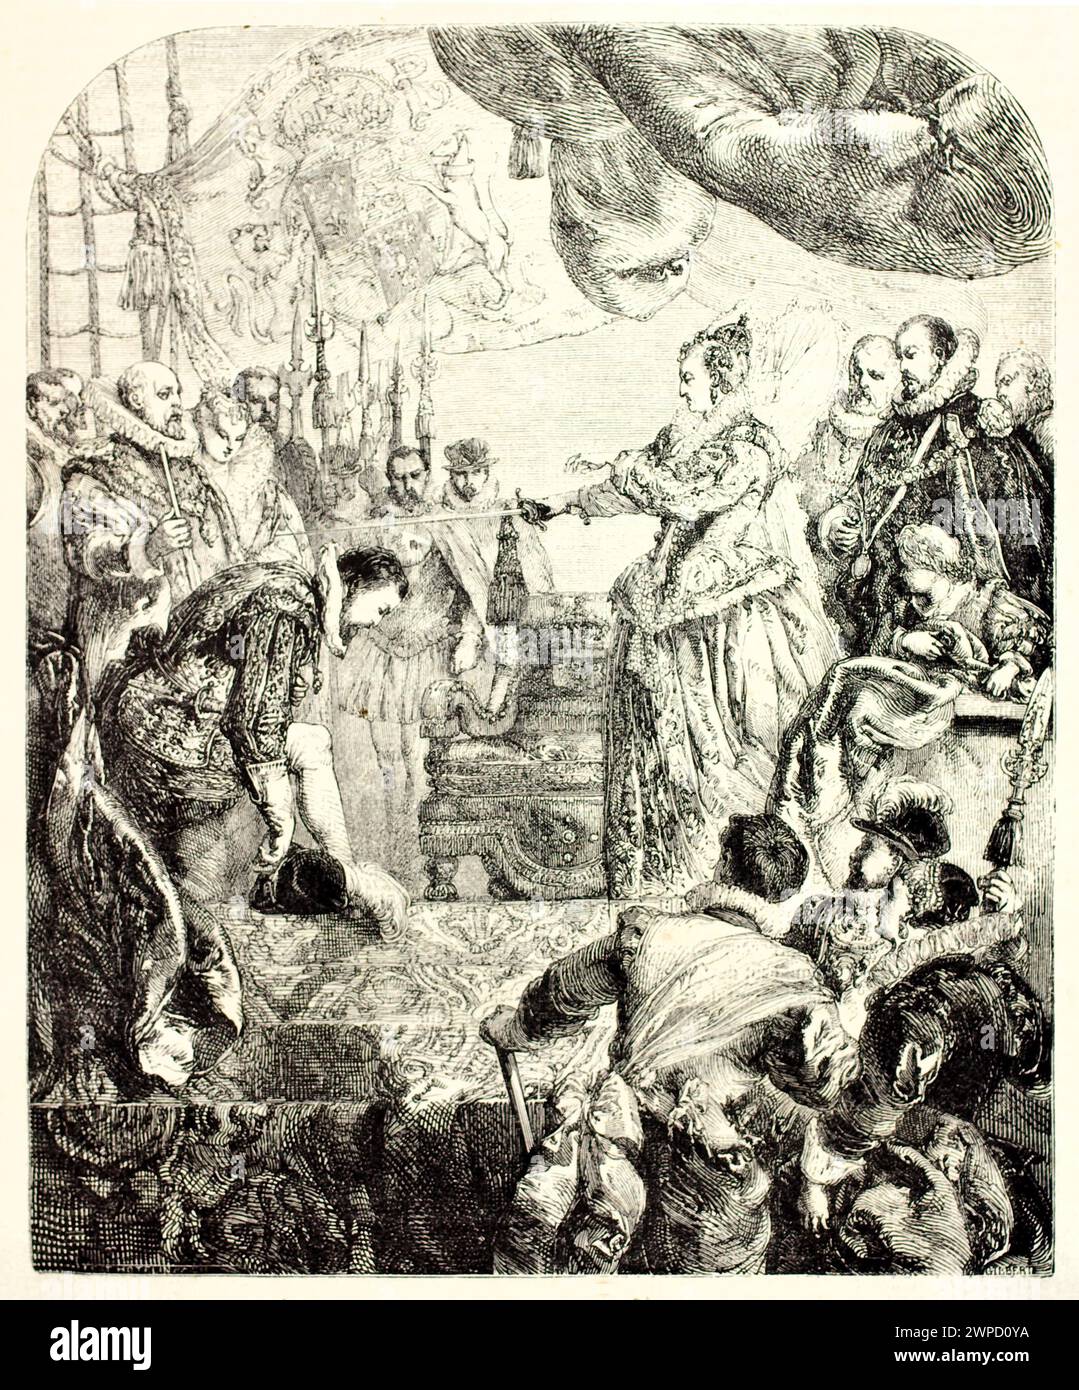 Alte, gravierte Illustration, die Francis Drake Ritterinvestitur von Königin Elisabeth zeigt. Von Gilbert, veröffentlicht auf Magasin Pittoresque, Paris, 1852 Stockfoto